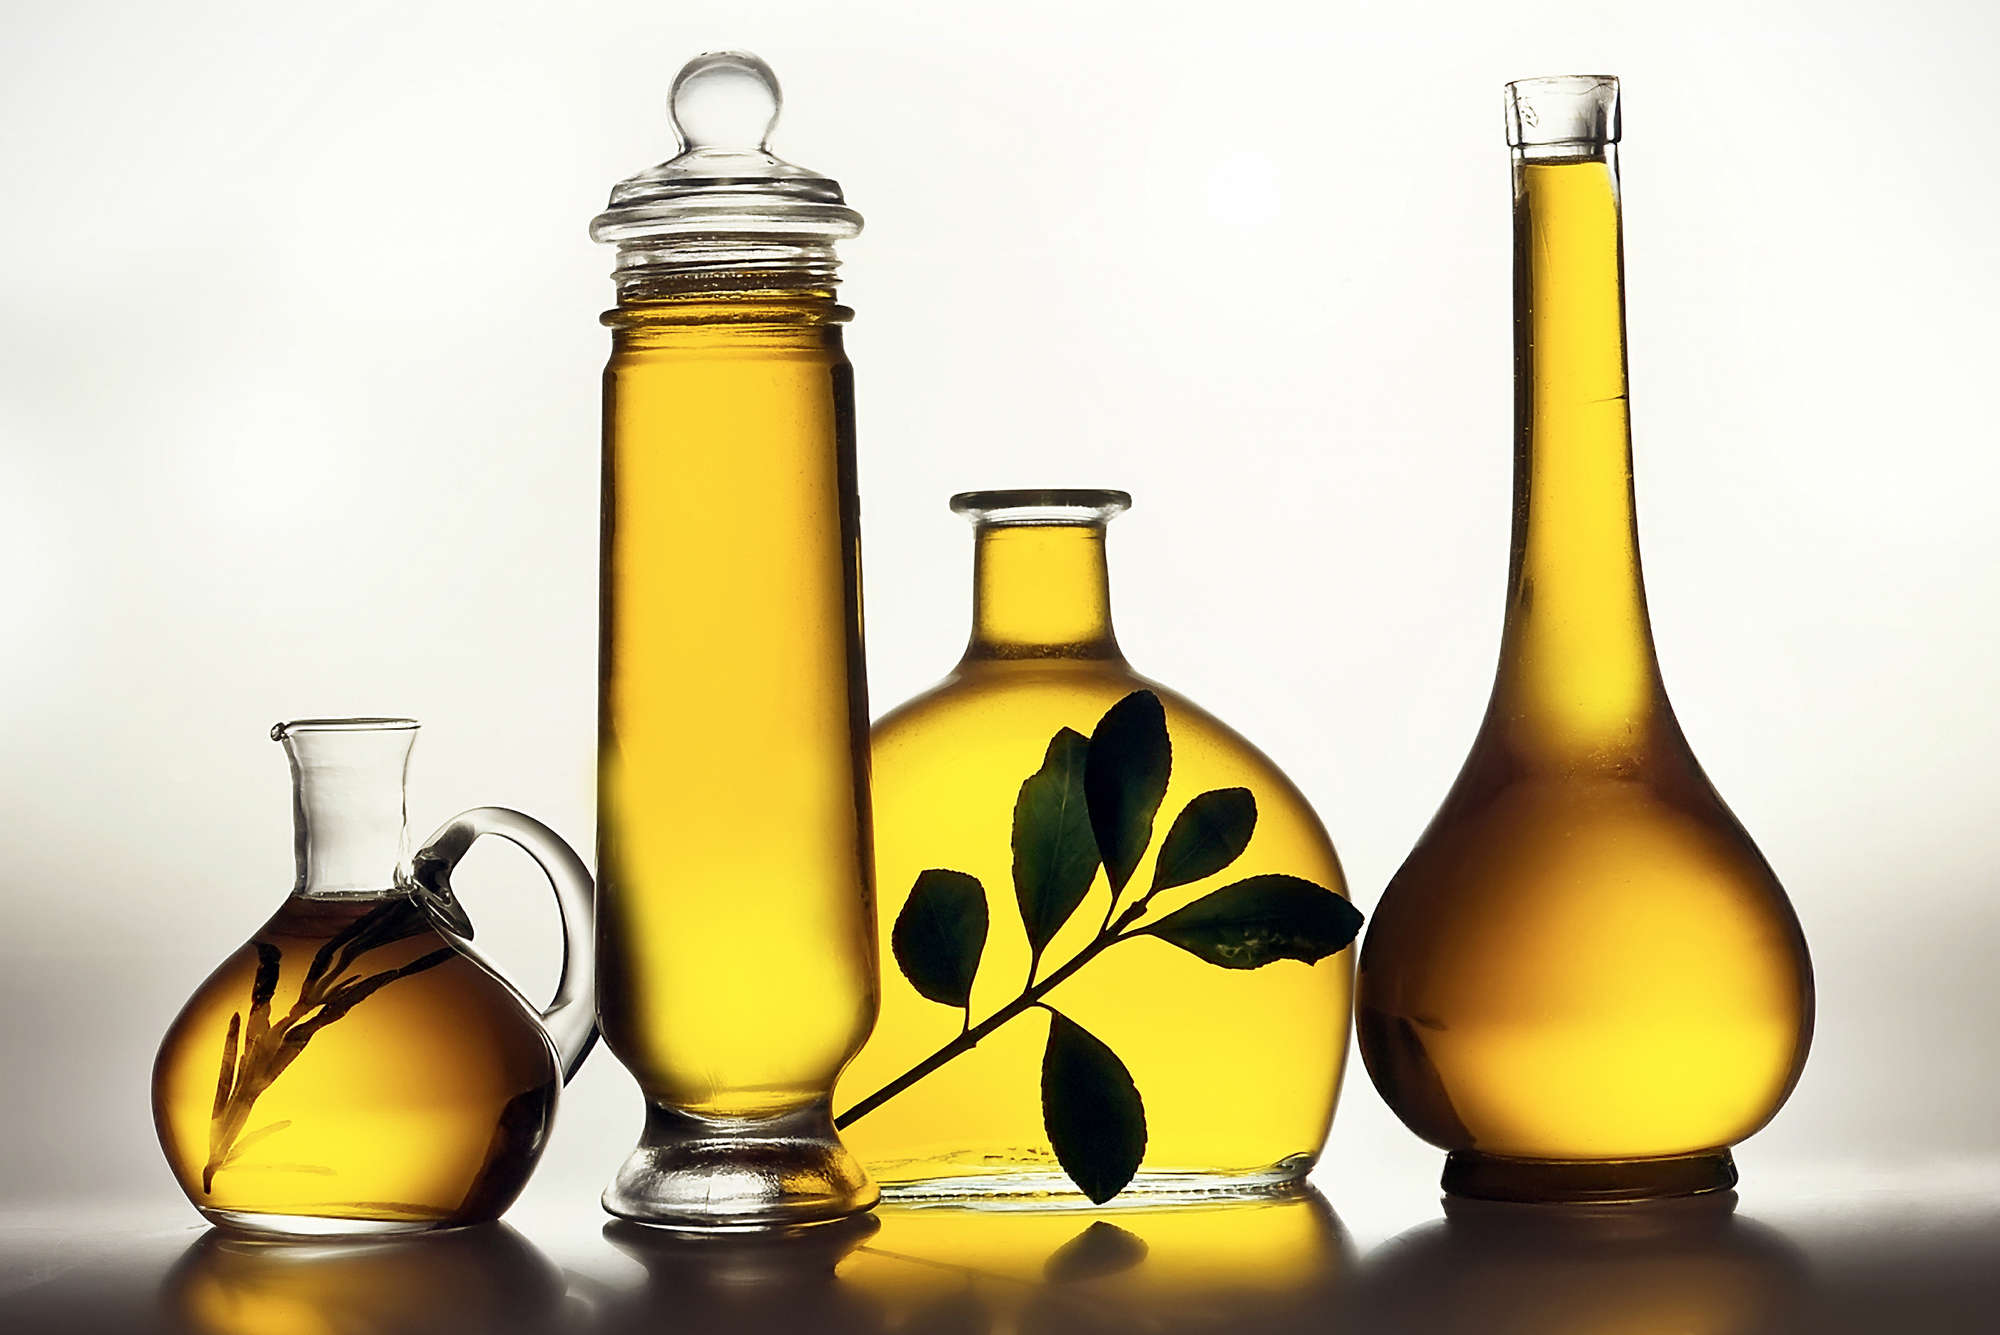             Fotomurali Bottiglie con olio d'oliva - Pile liscio premium
        